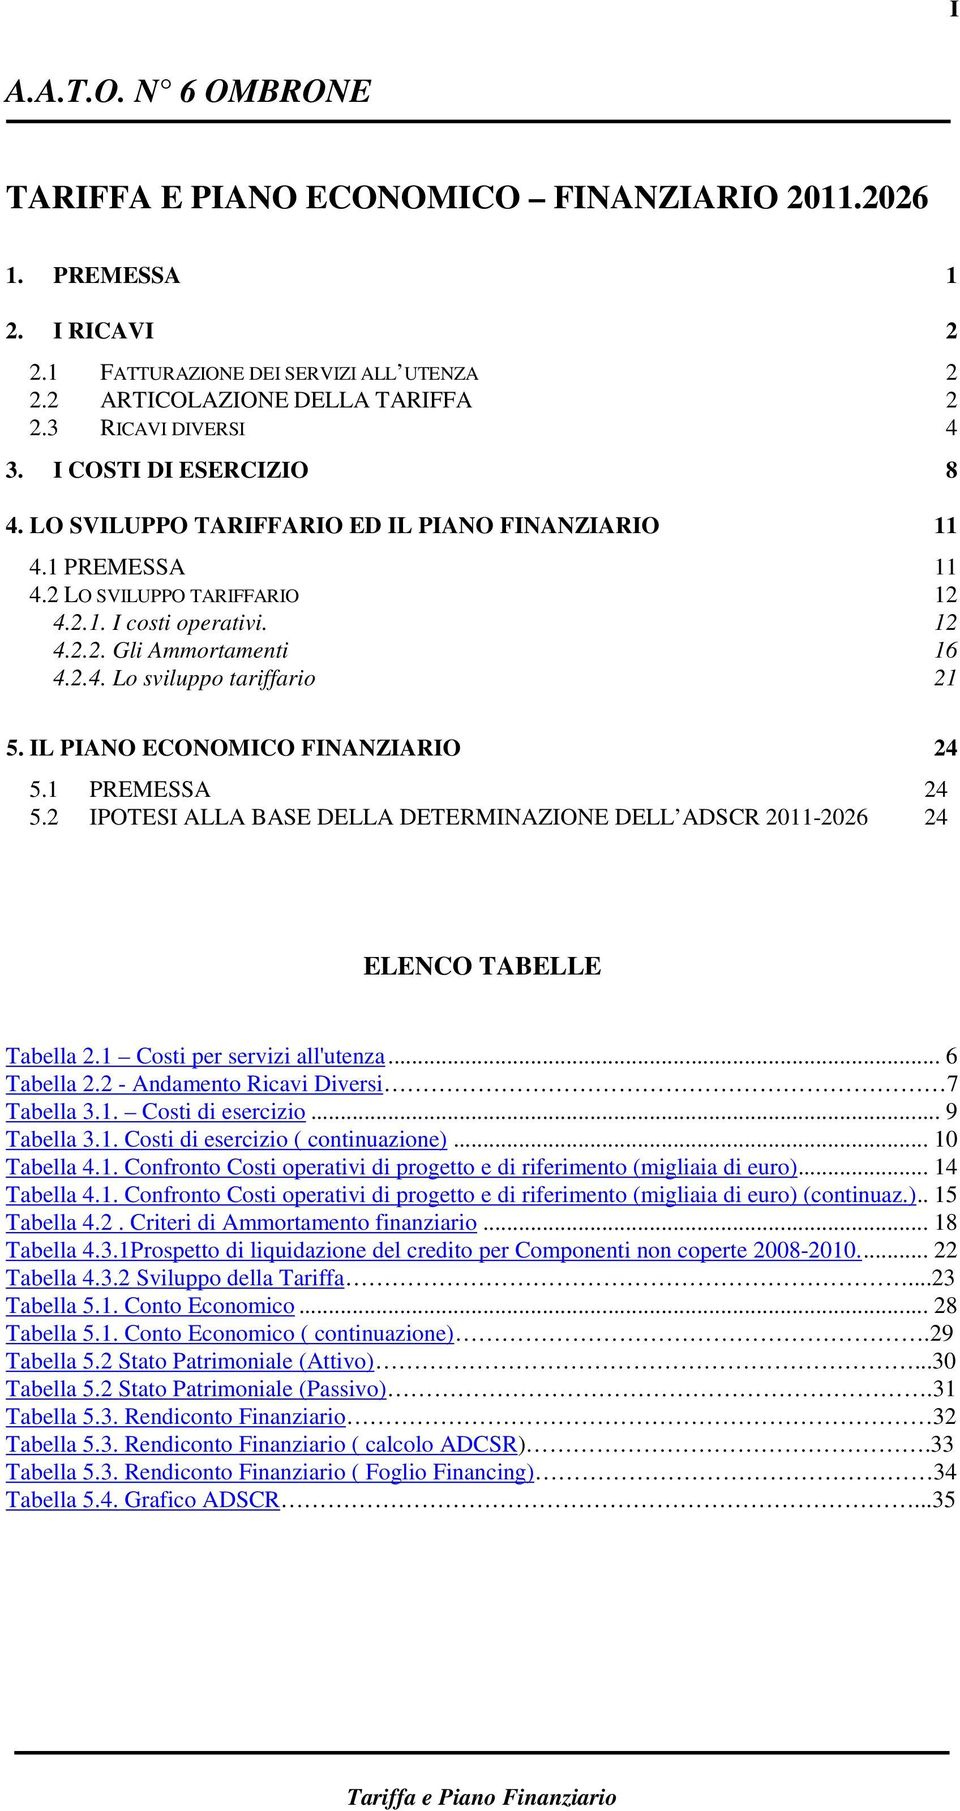 IL PIANO ECONOMICO FINANZIARIO 24 5.1 PREMESSA 24 5.2 IPOTESI ALLA BASE DELLA DETERMINAZIONE DELL ADSCR 2011-2026 24 ELENCO TABELLE Tabella 2.1 Costi per servizi all'utenza... 6 Tabella 2.